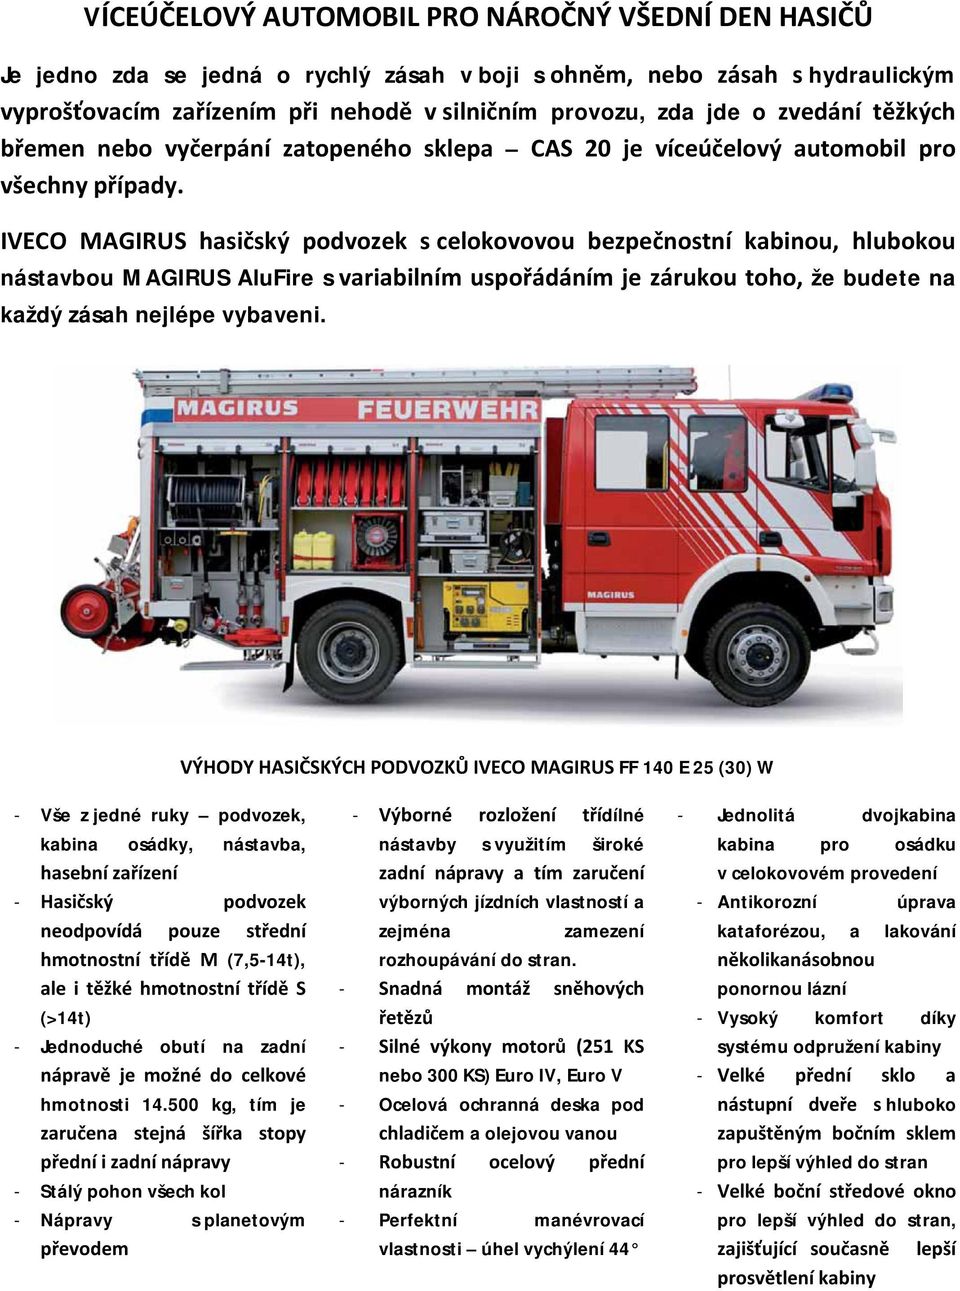 IVECO MAGIRUS hasičský podvozek s celokovovou bezpečnostní kabinou, hlubokou nástavbou MAGIRUS AluFire s variabilním uspořádáním je zárukou toho, že budete na každý zásah nejlépe vybaveni.